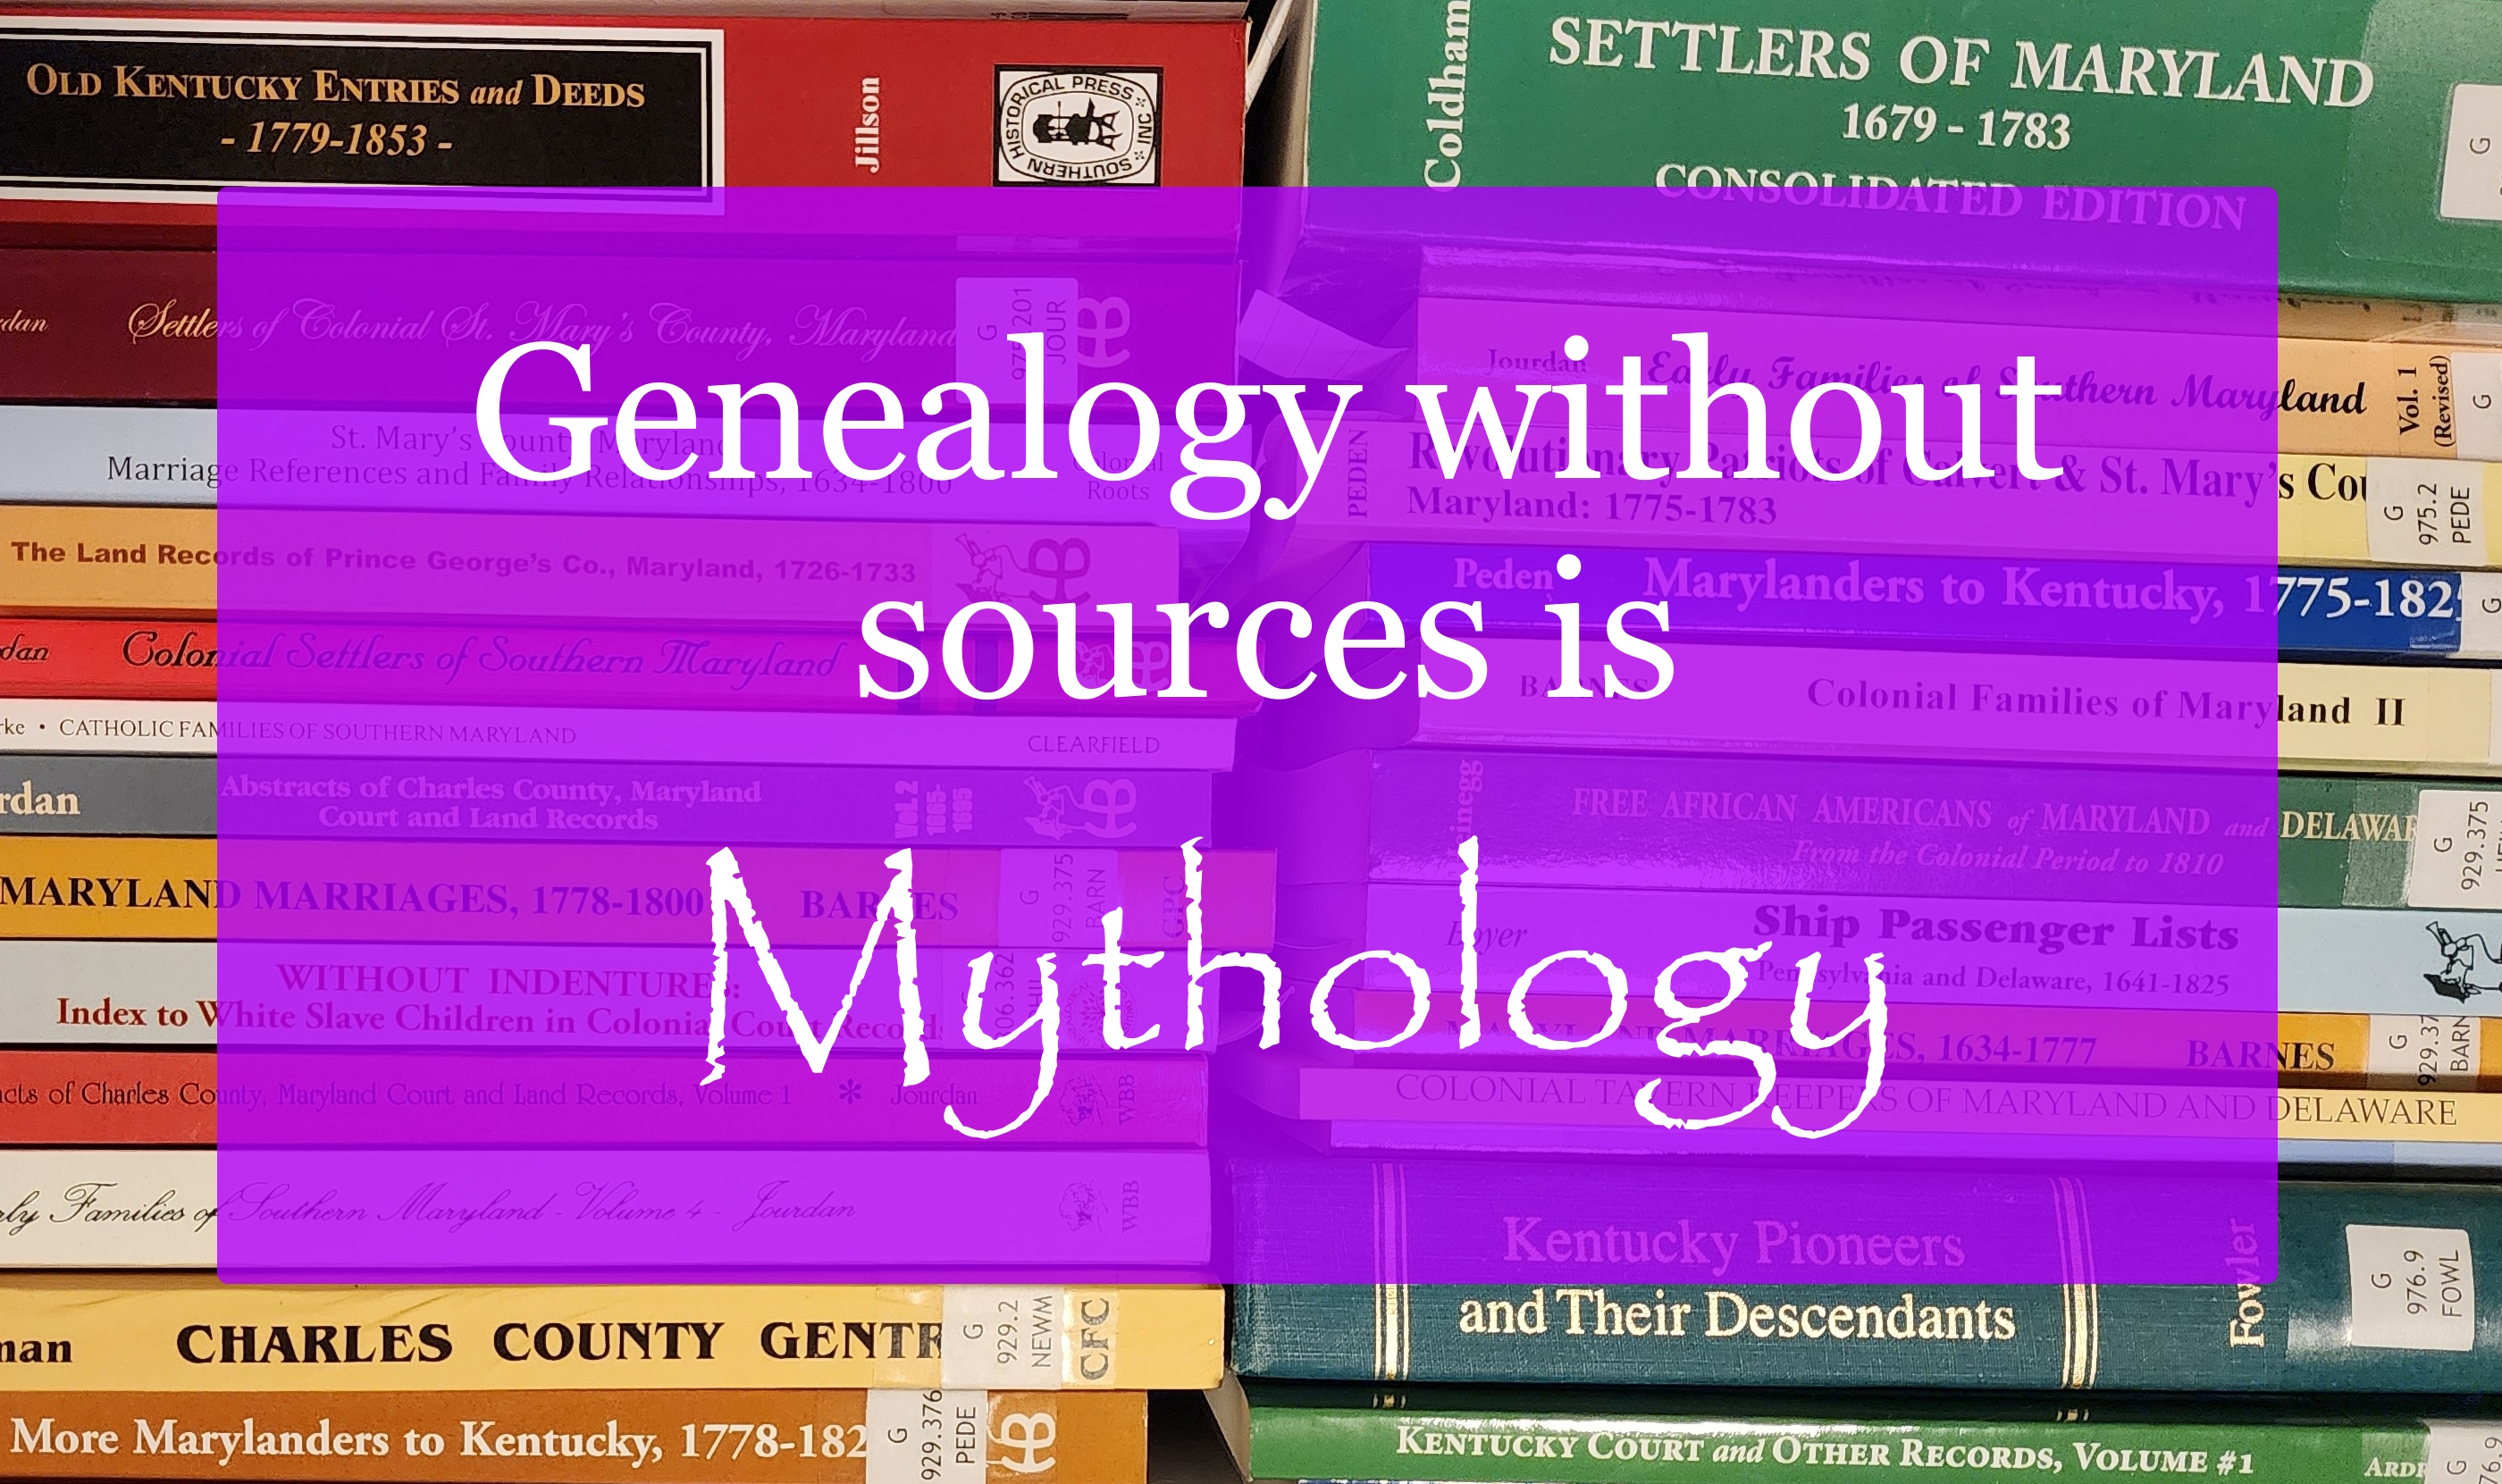 Genealogy without sources is mythology